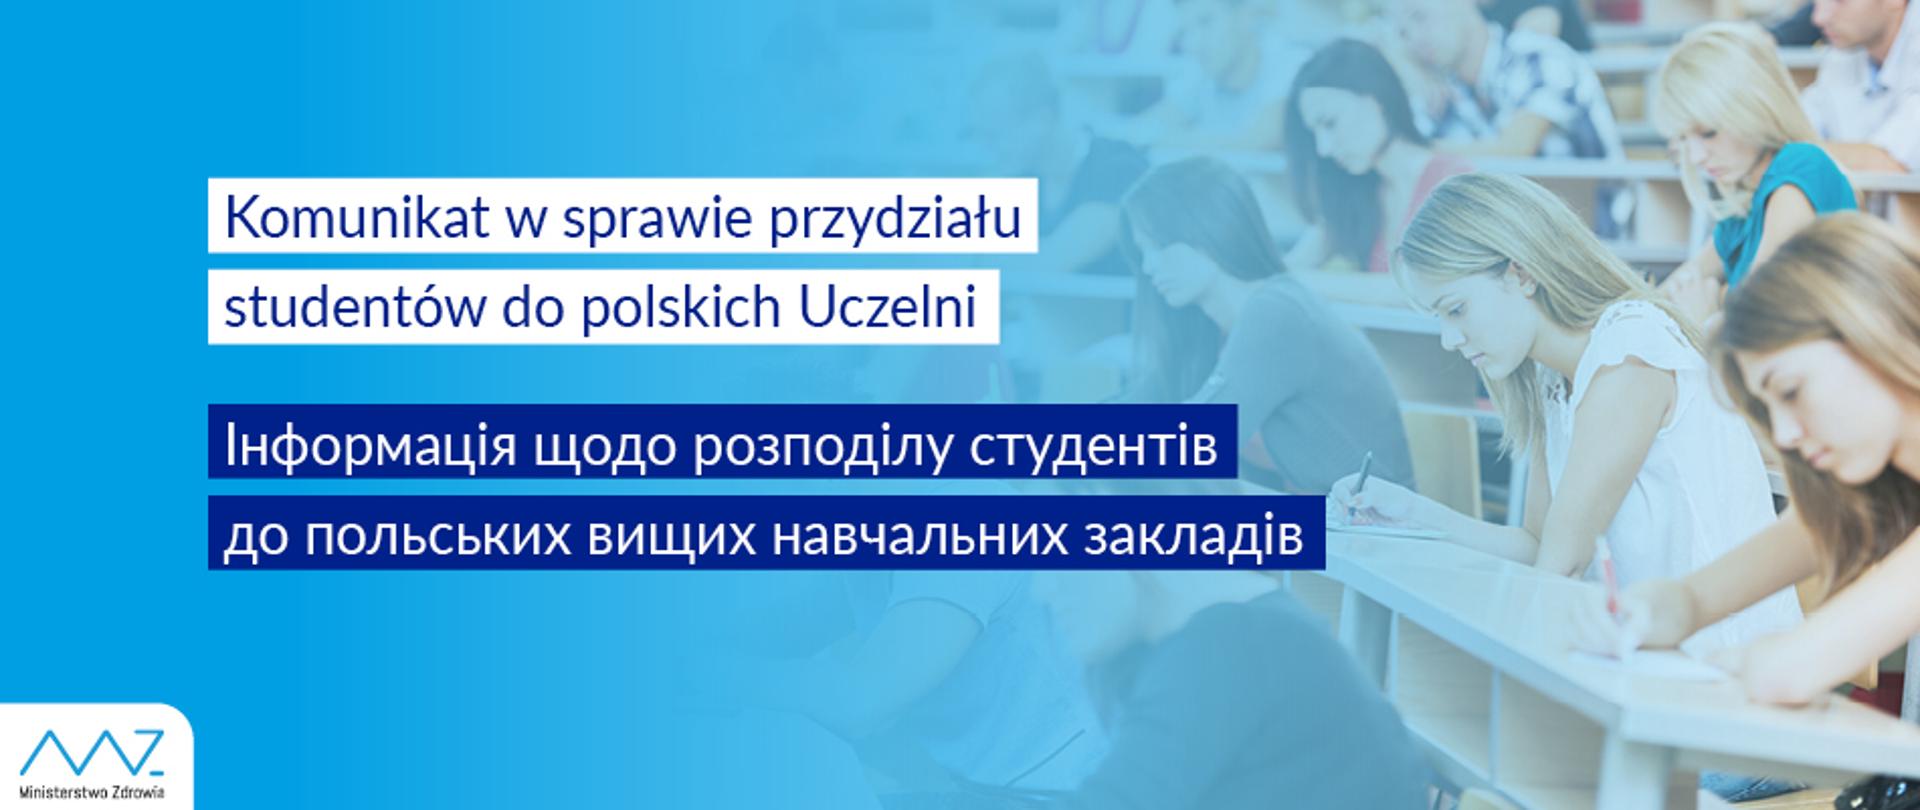 Komunikat ws. przydziału studentów do polskich uczelni